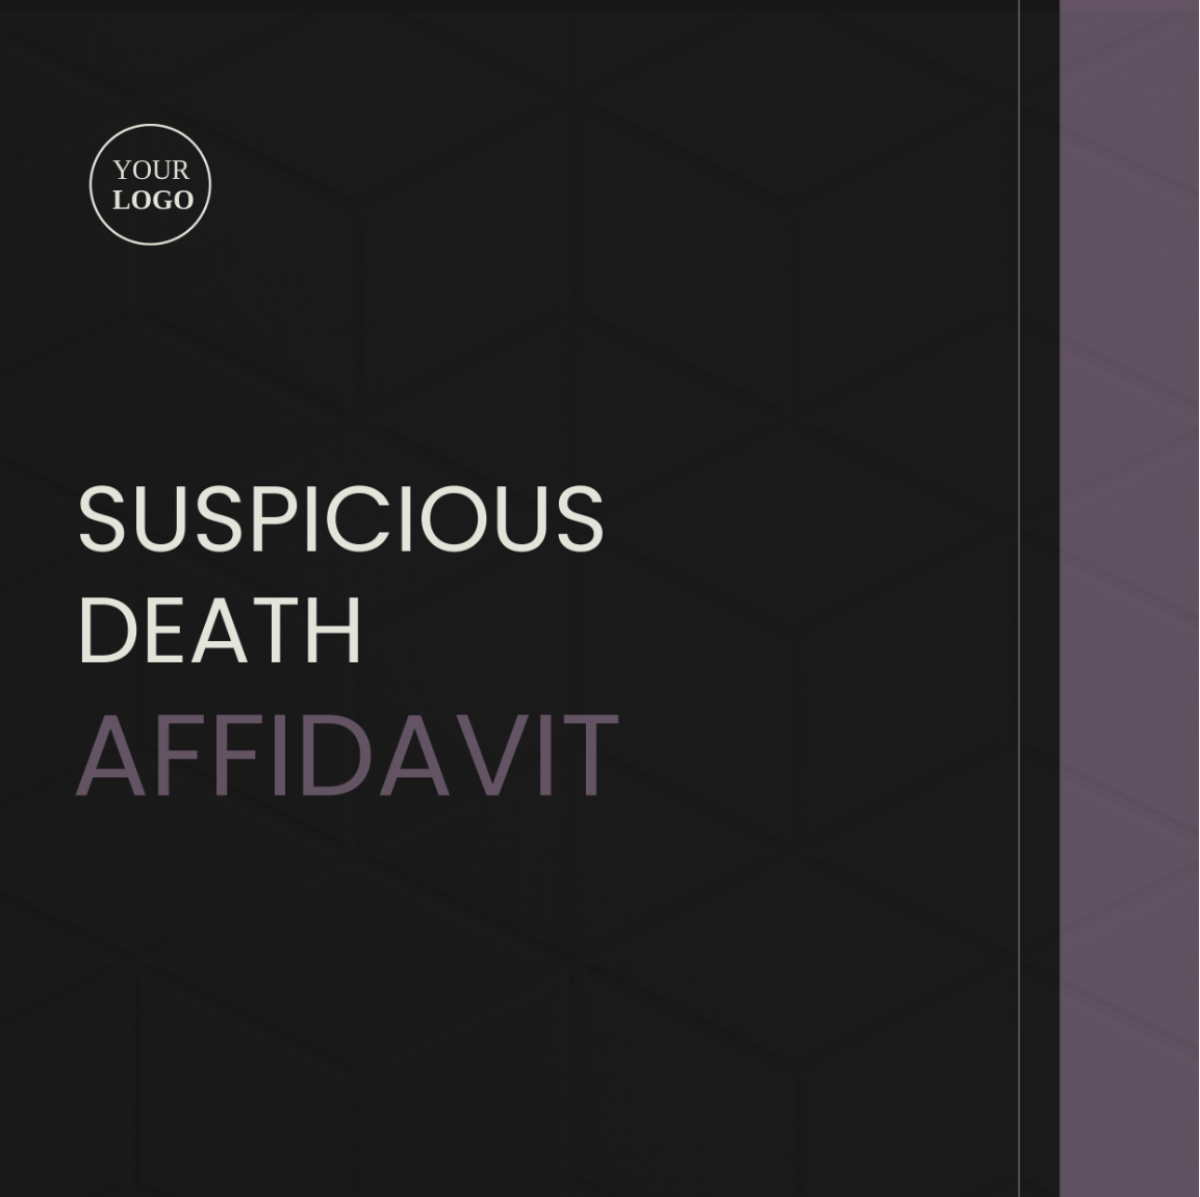 Suspicious Death Affidavit Template